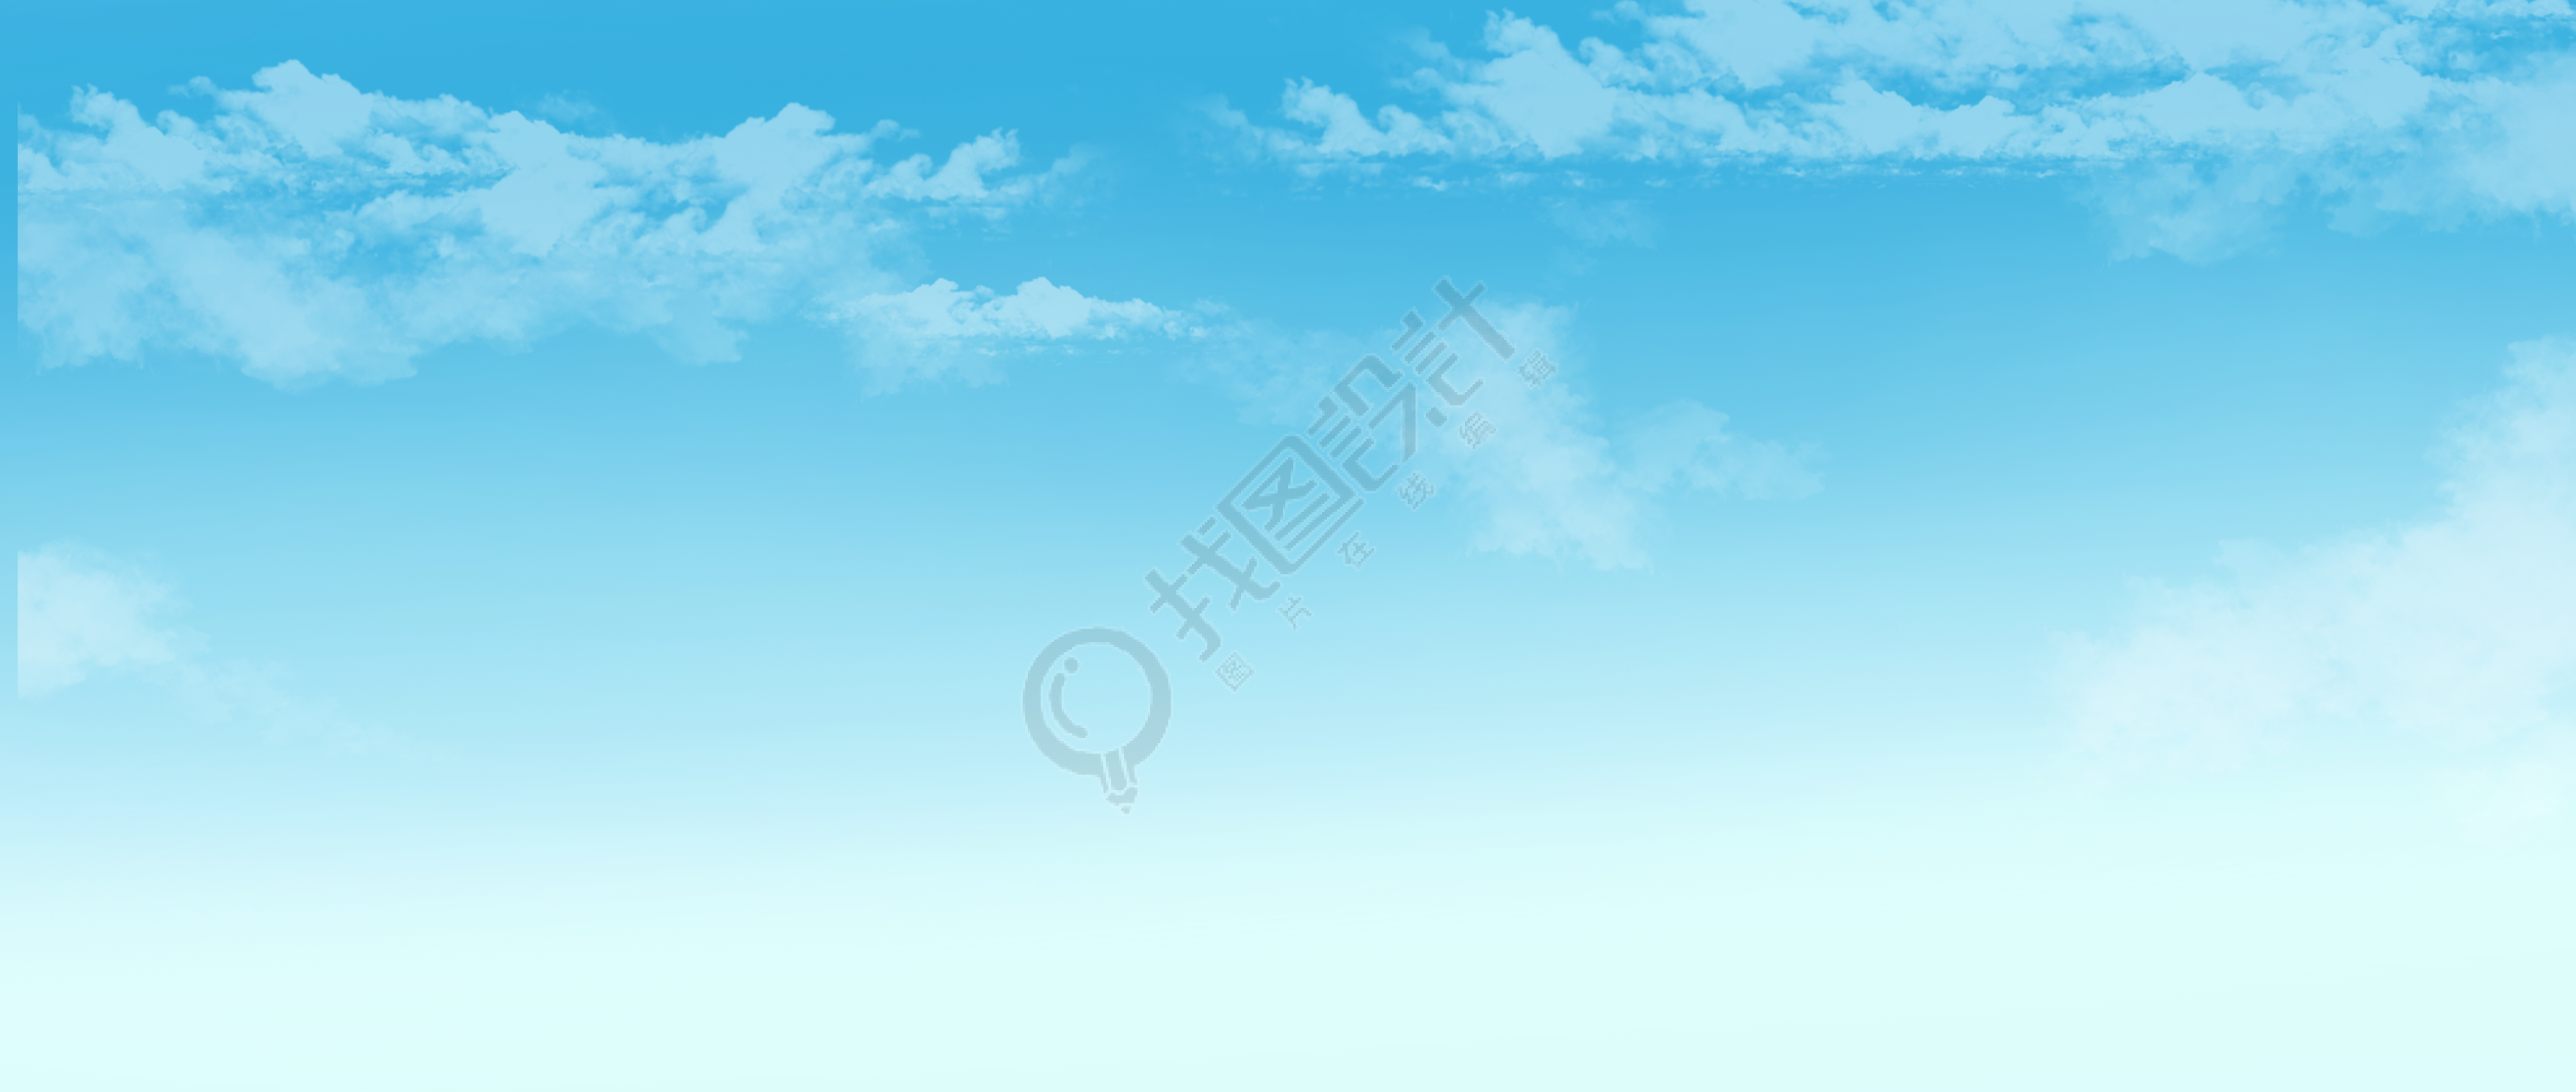 蓝色天空中漂浮的白云图片